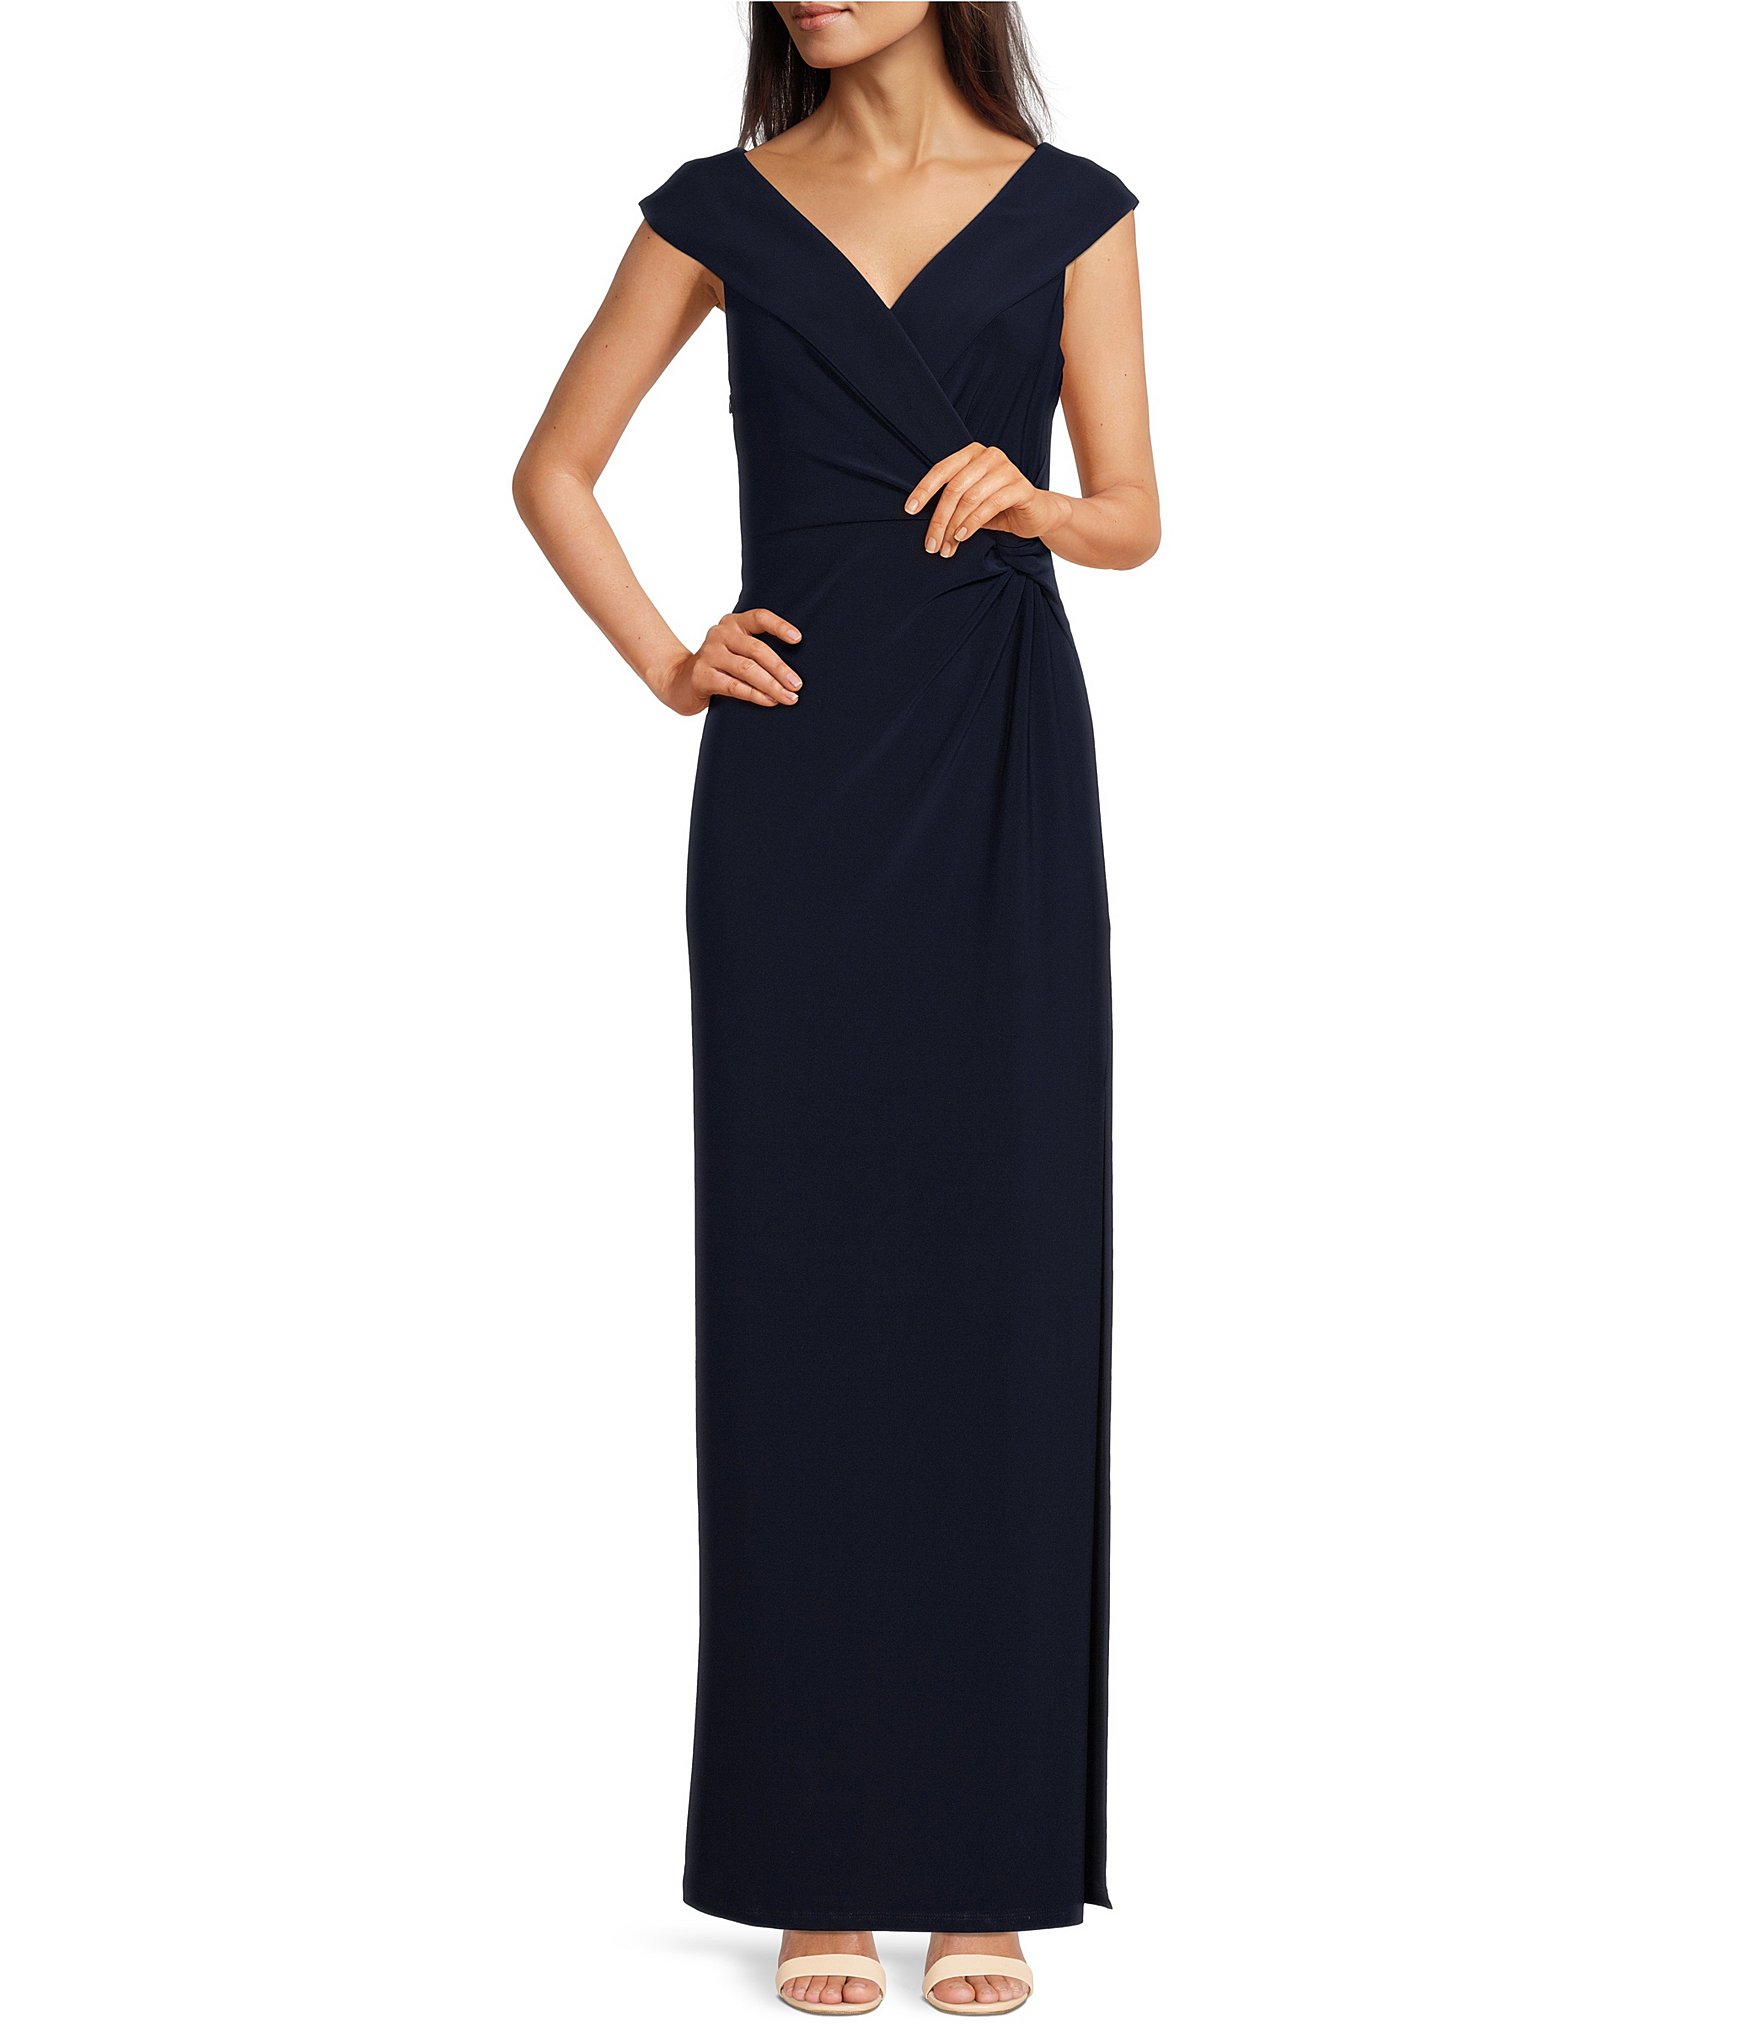 Ralph Lauren Women's Formal Dresses & Gowns | Dillard's